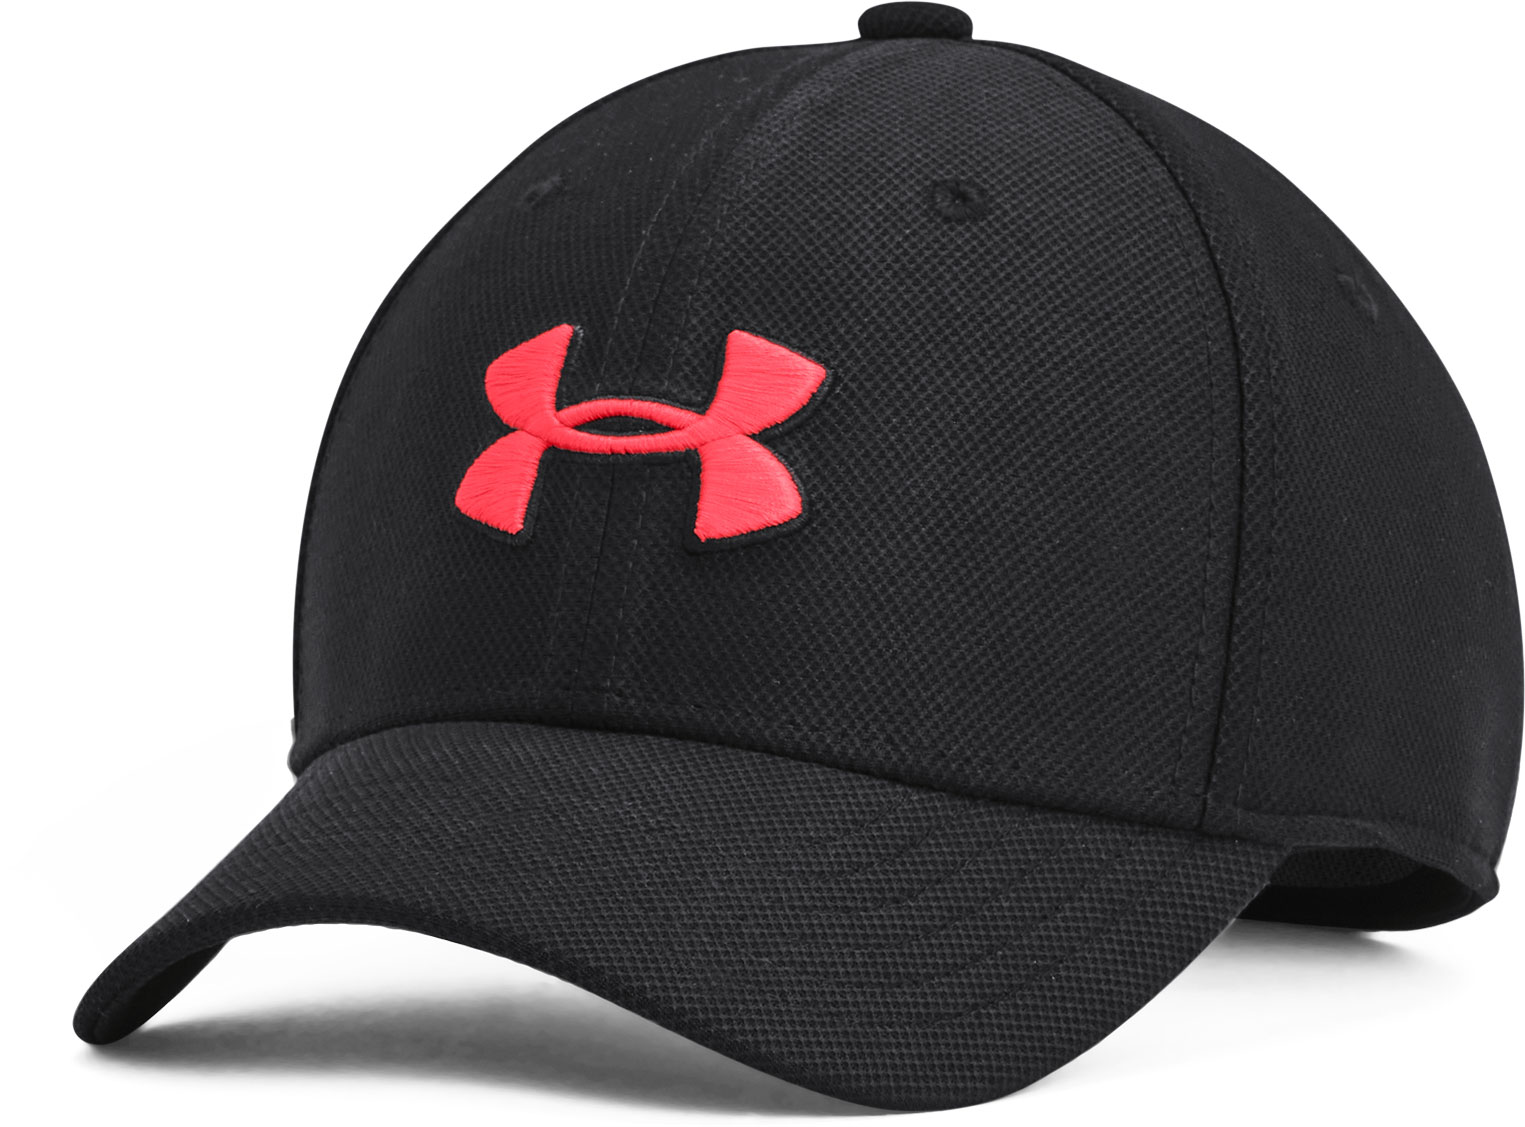 Boys' baseball cap